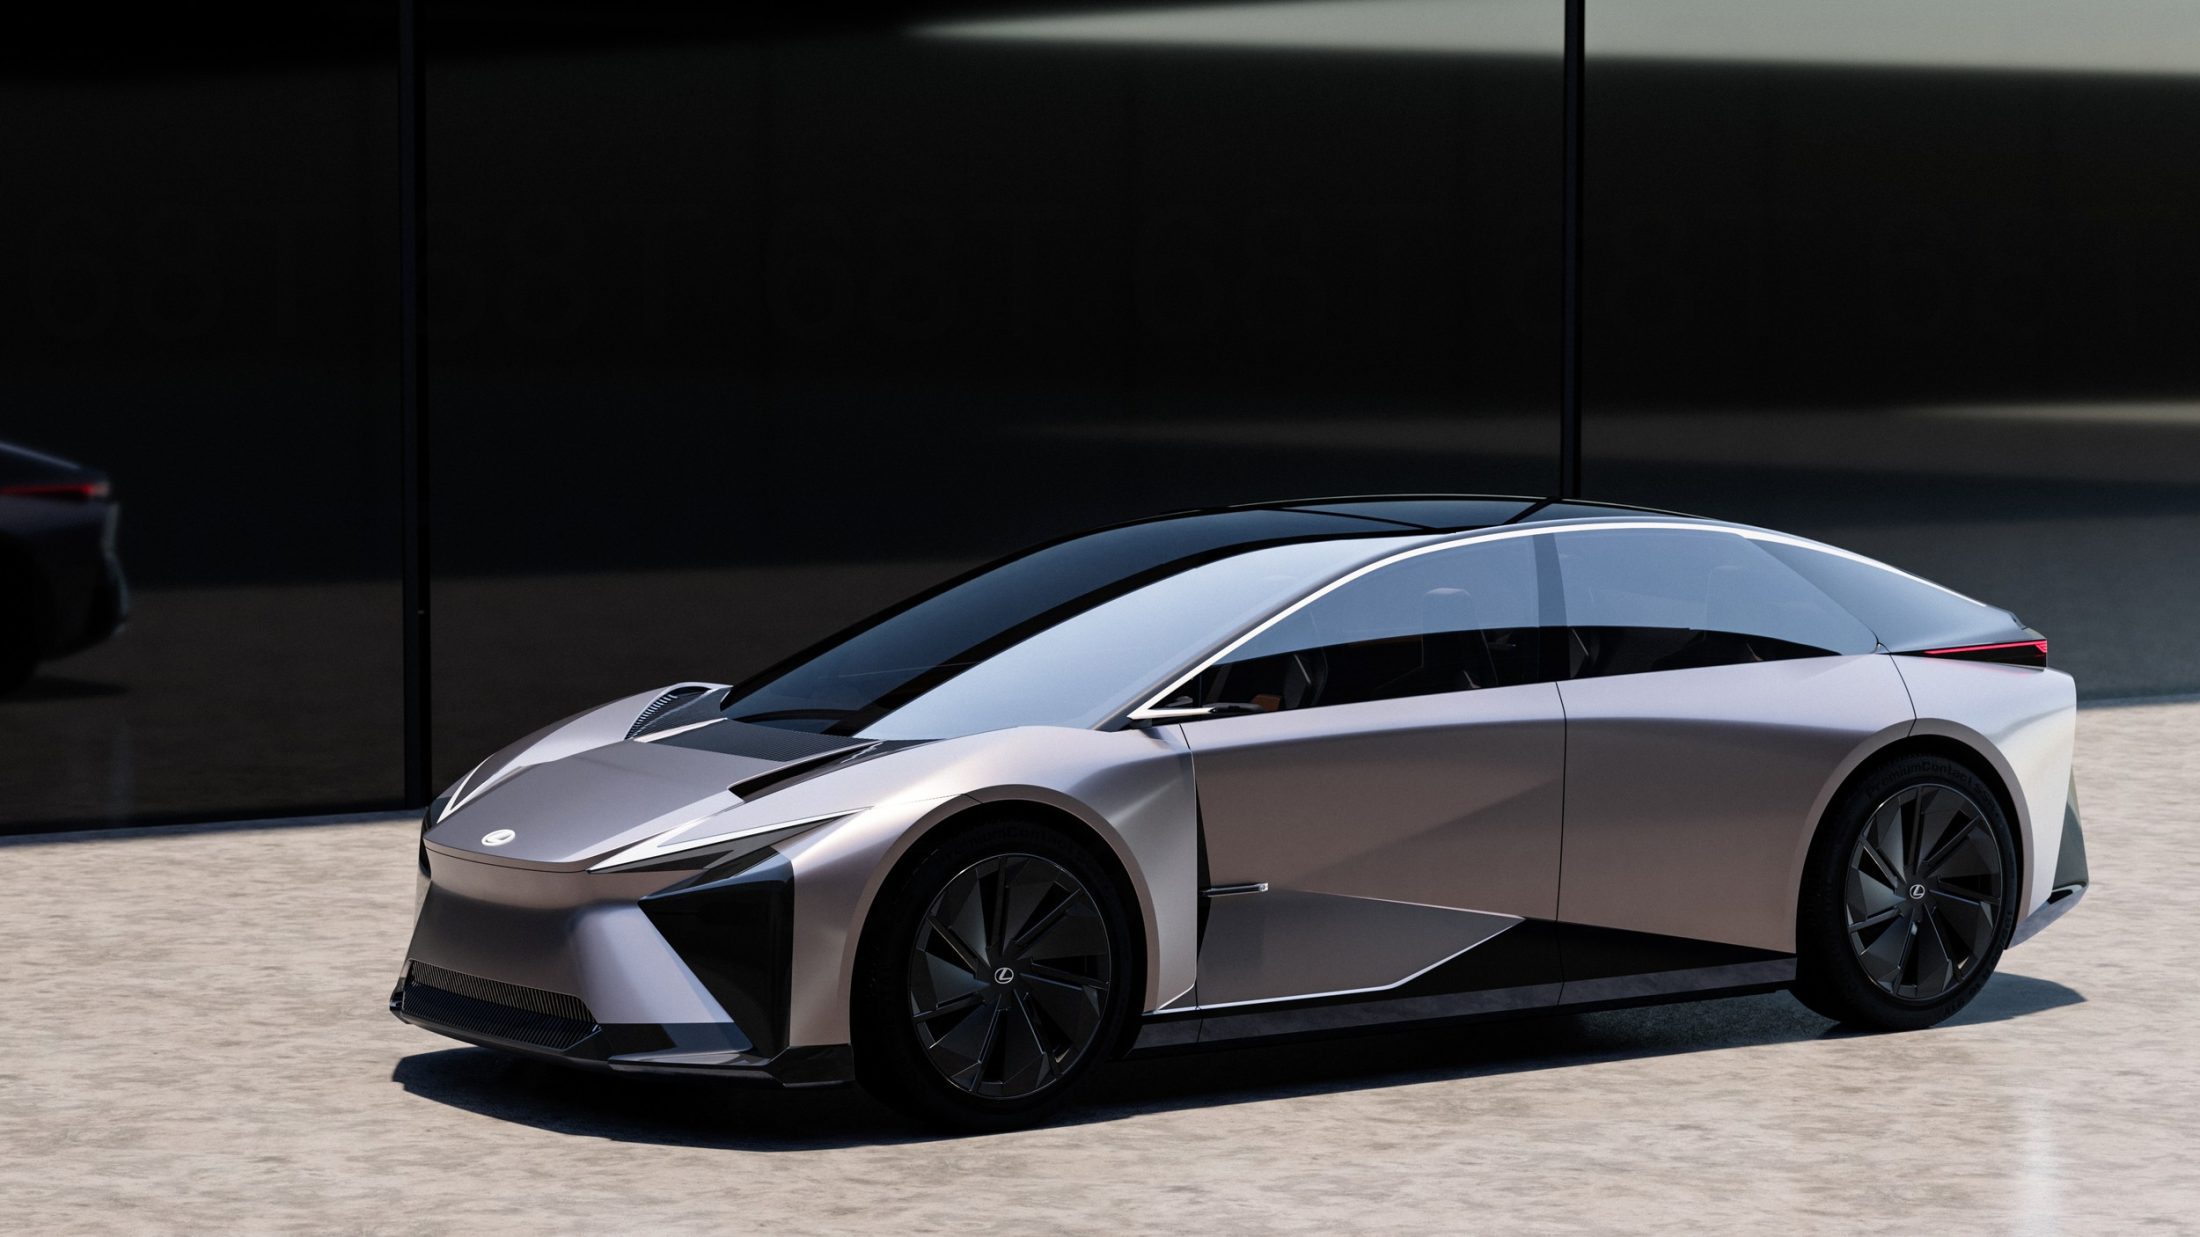 https://e-vehicleinfo.com/lexus-reveals-lf-zc-lf-zl-two-electric-car-concepts-for-2026/